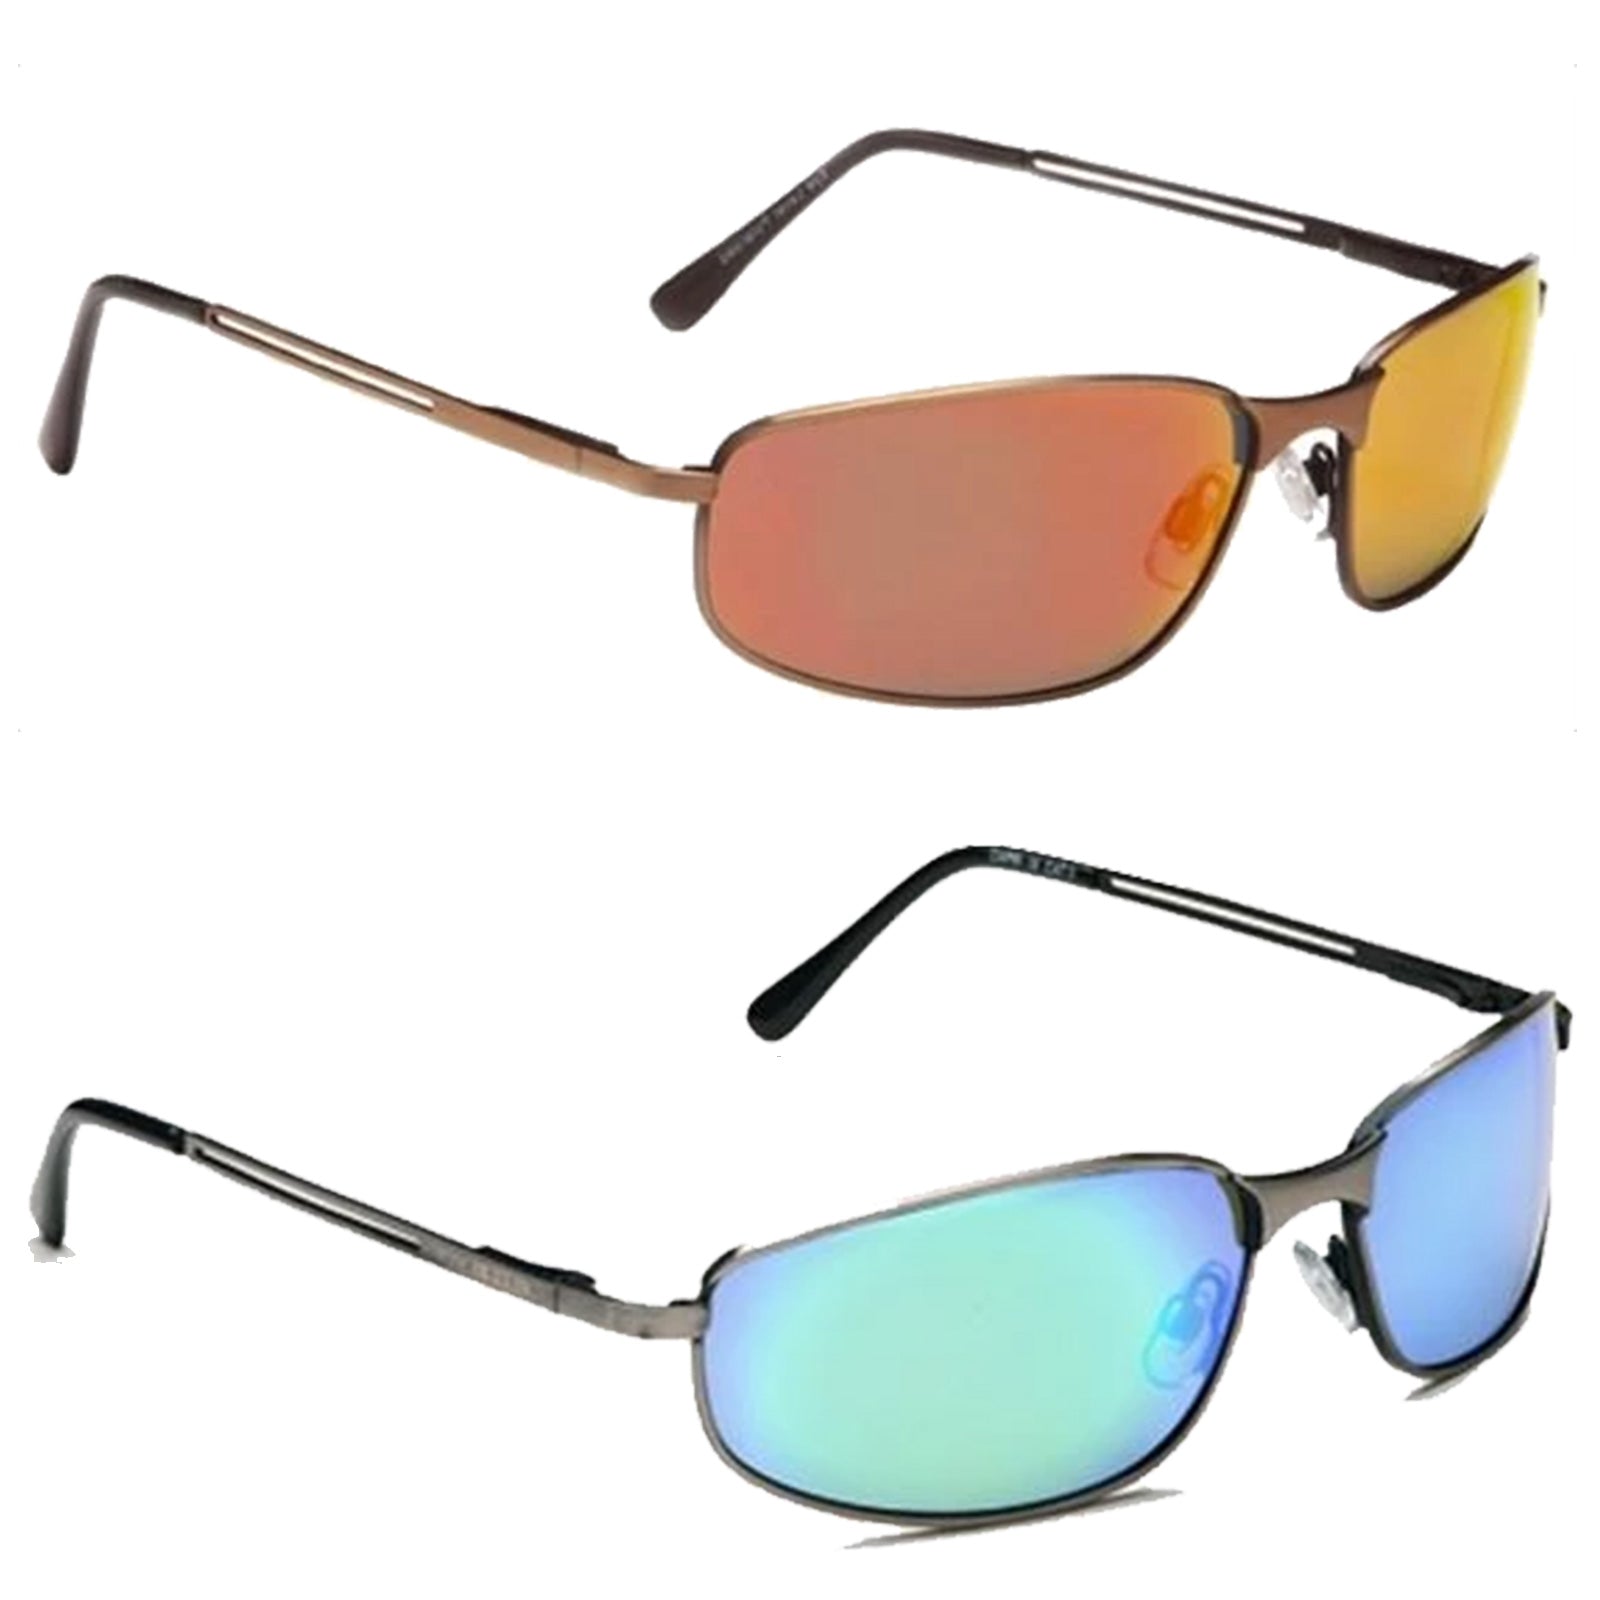 Eyelevel Mens Capri Polarized Sunglasses